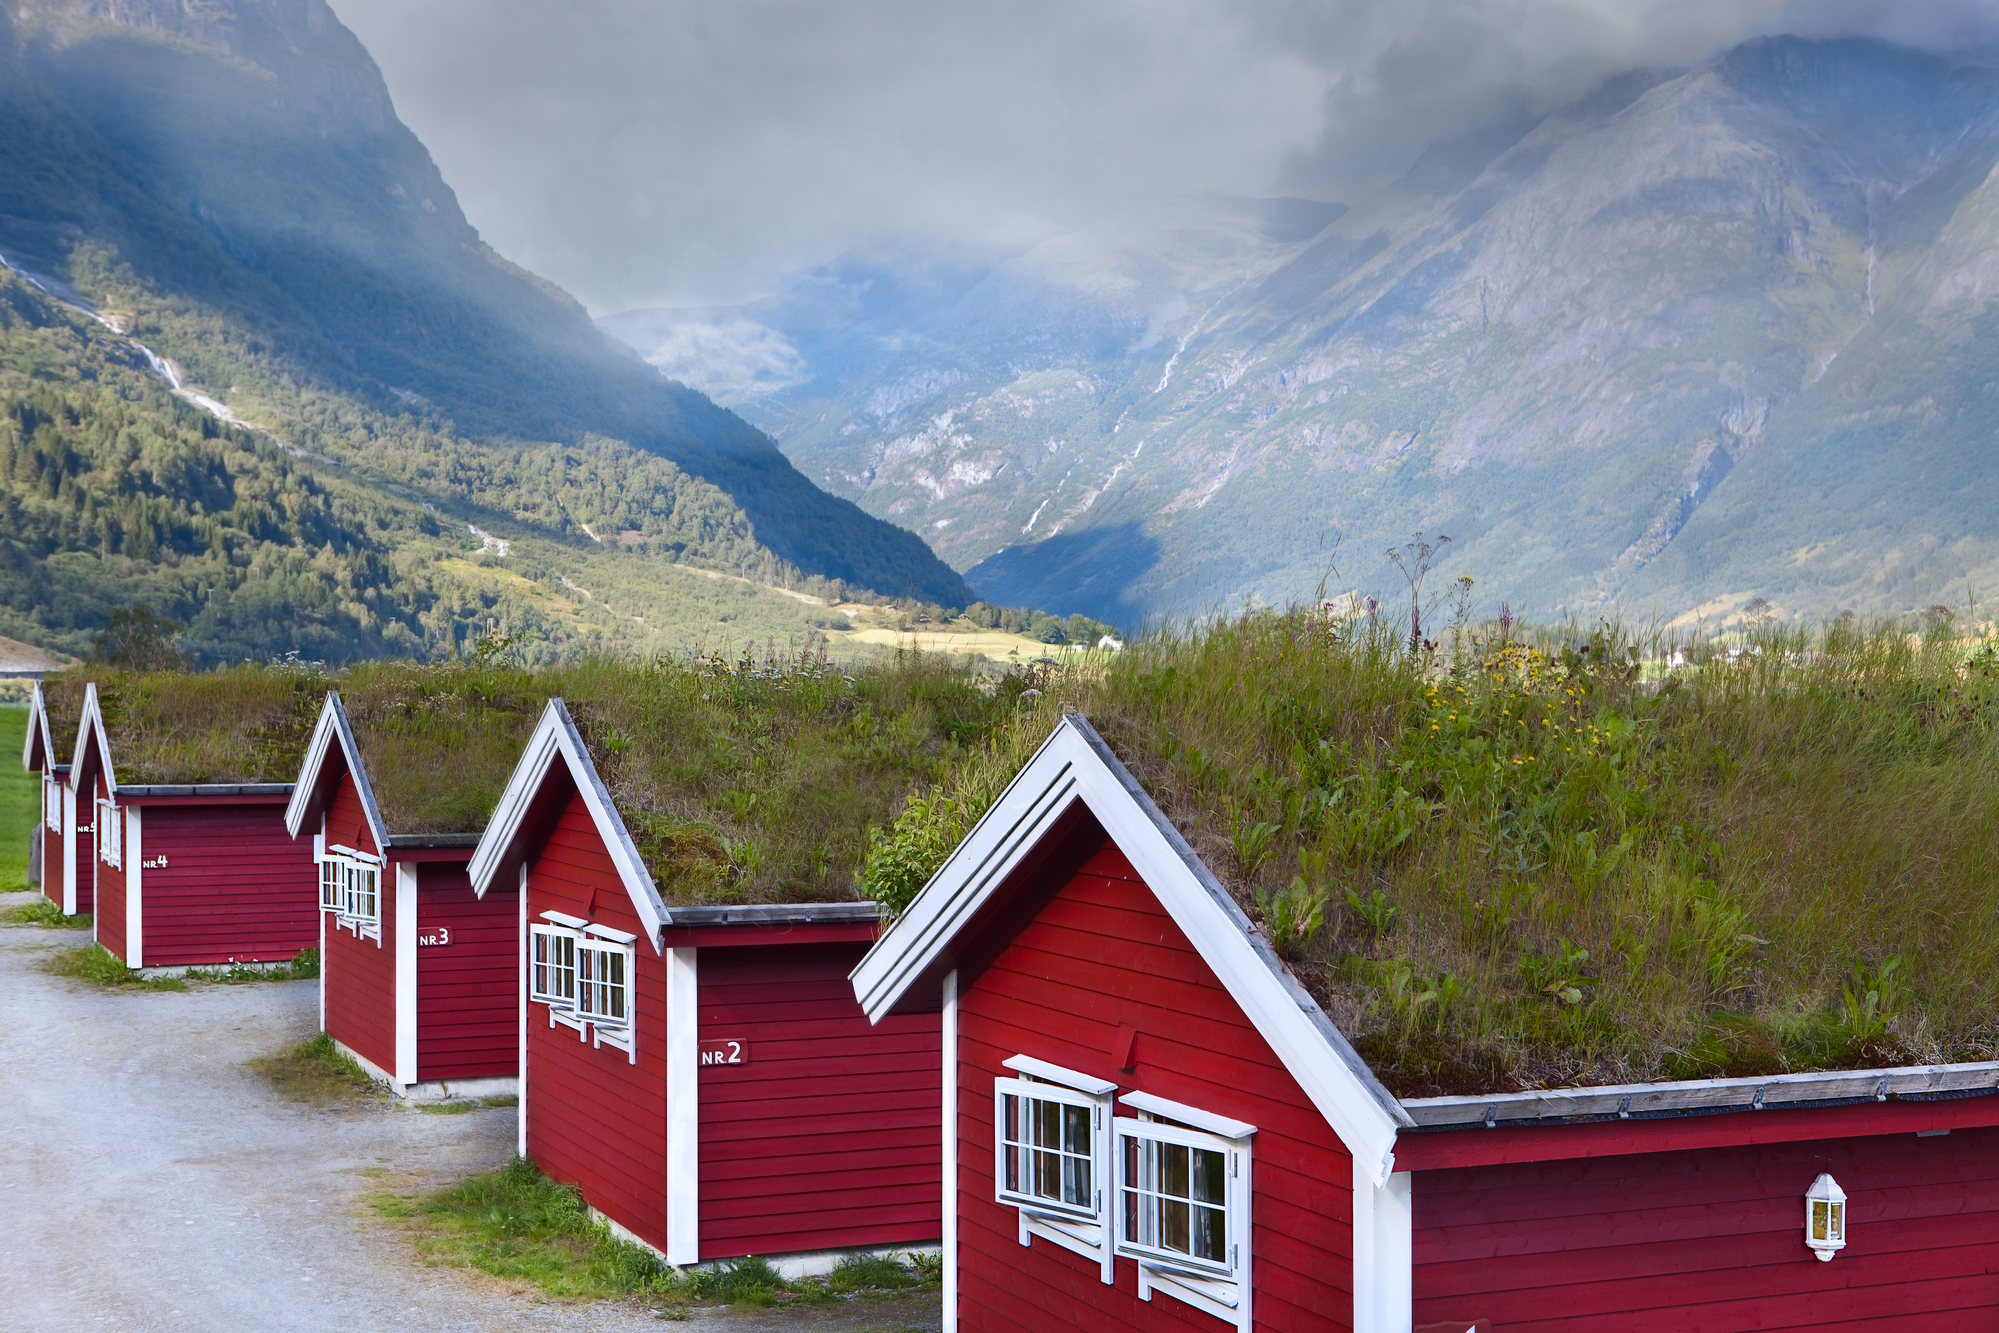 NorweТрадиционные деревянные дома в Норвегииgian houses in the mountains